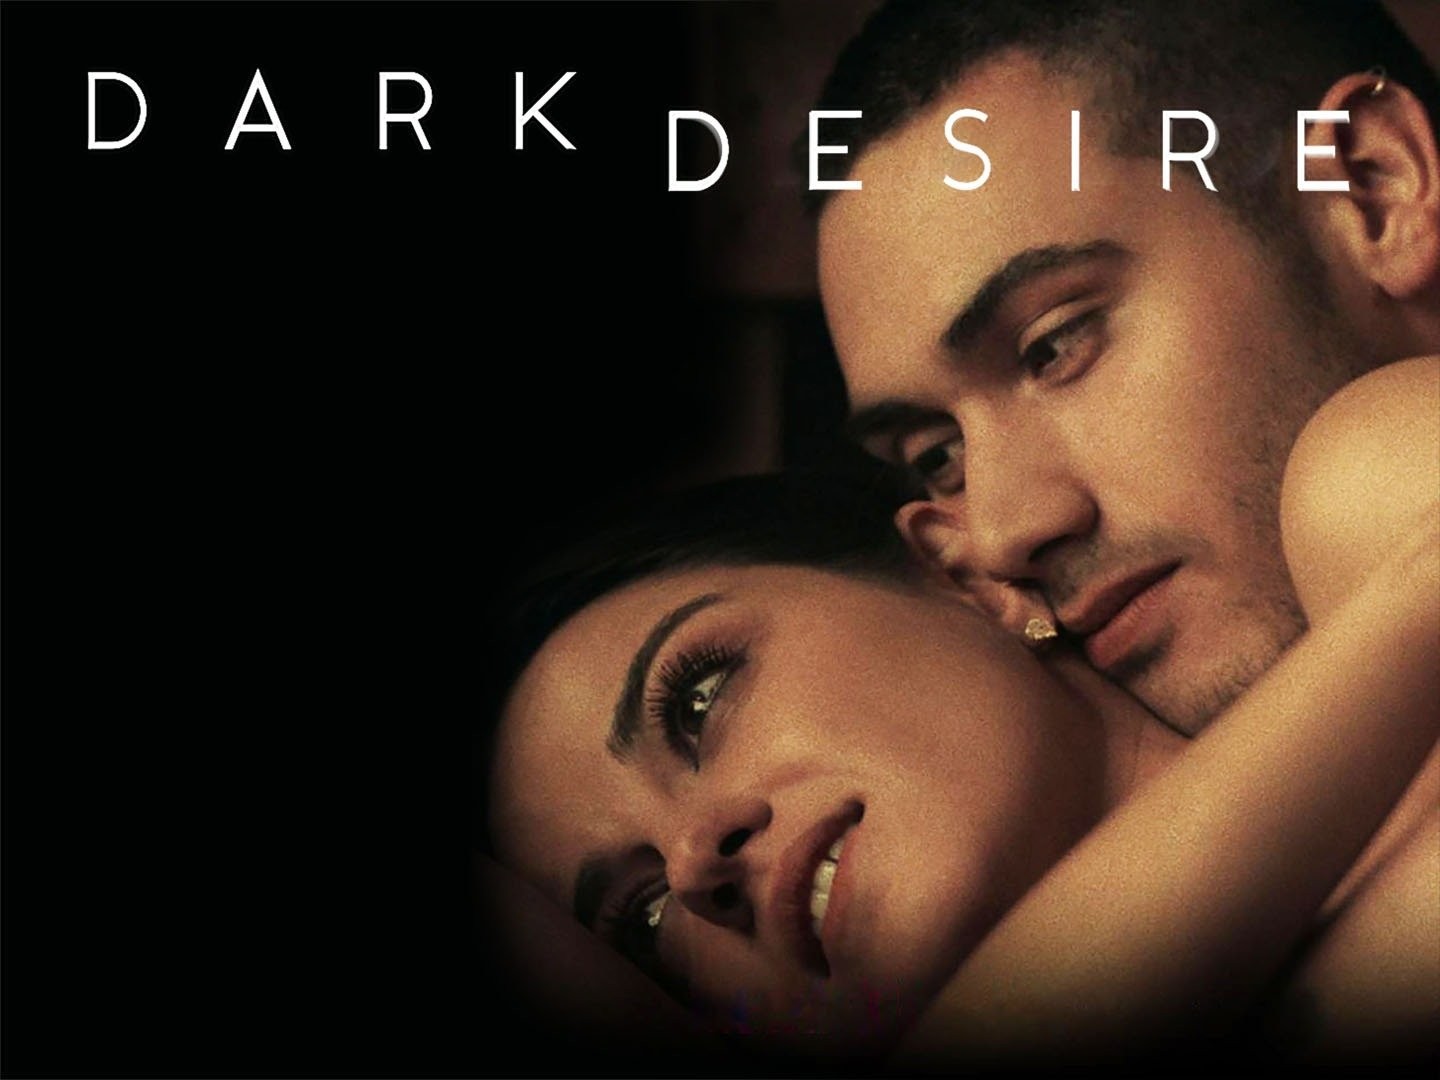 Dark desires season 1